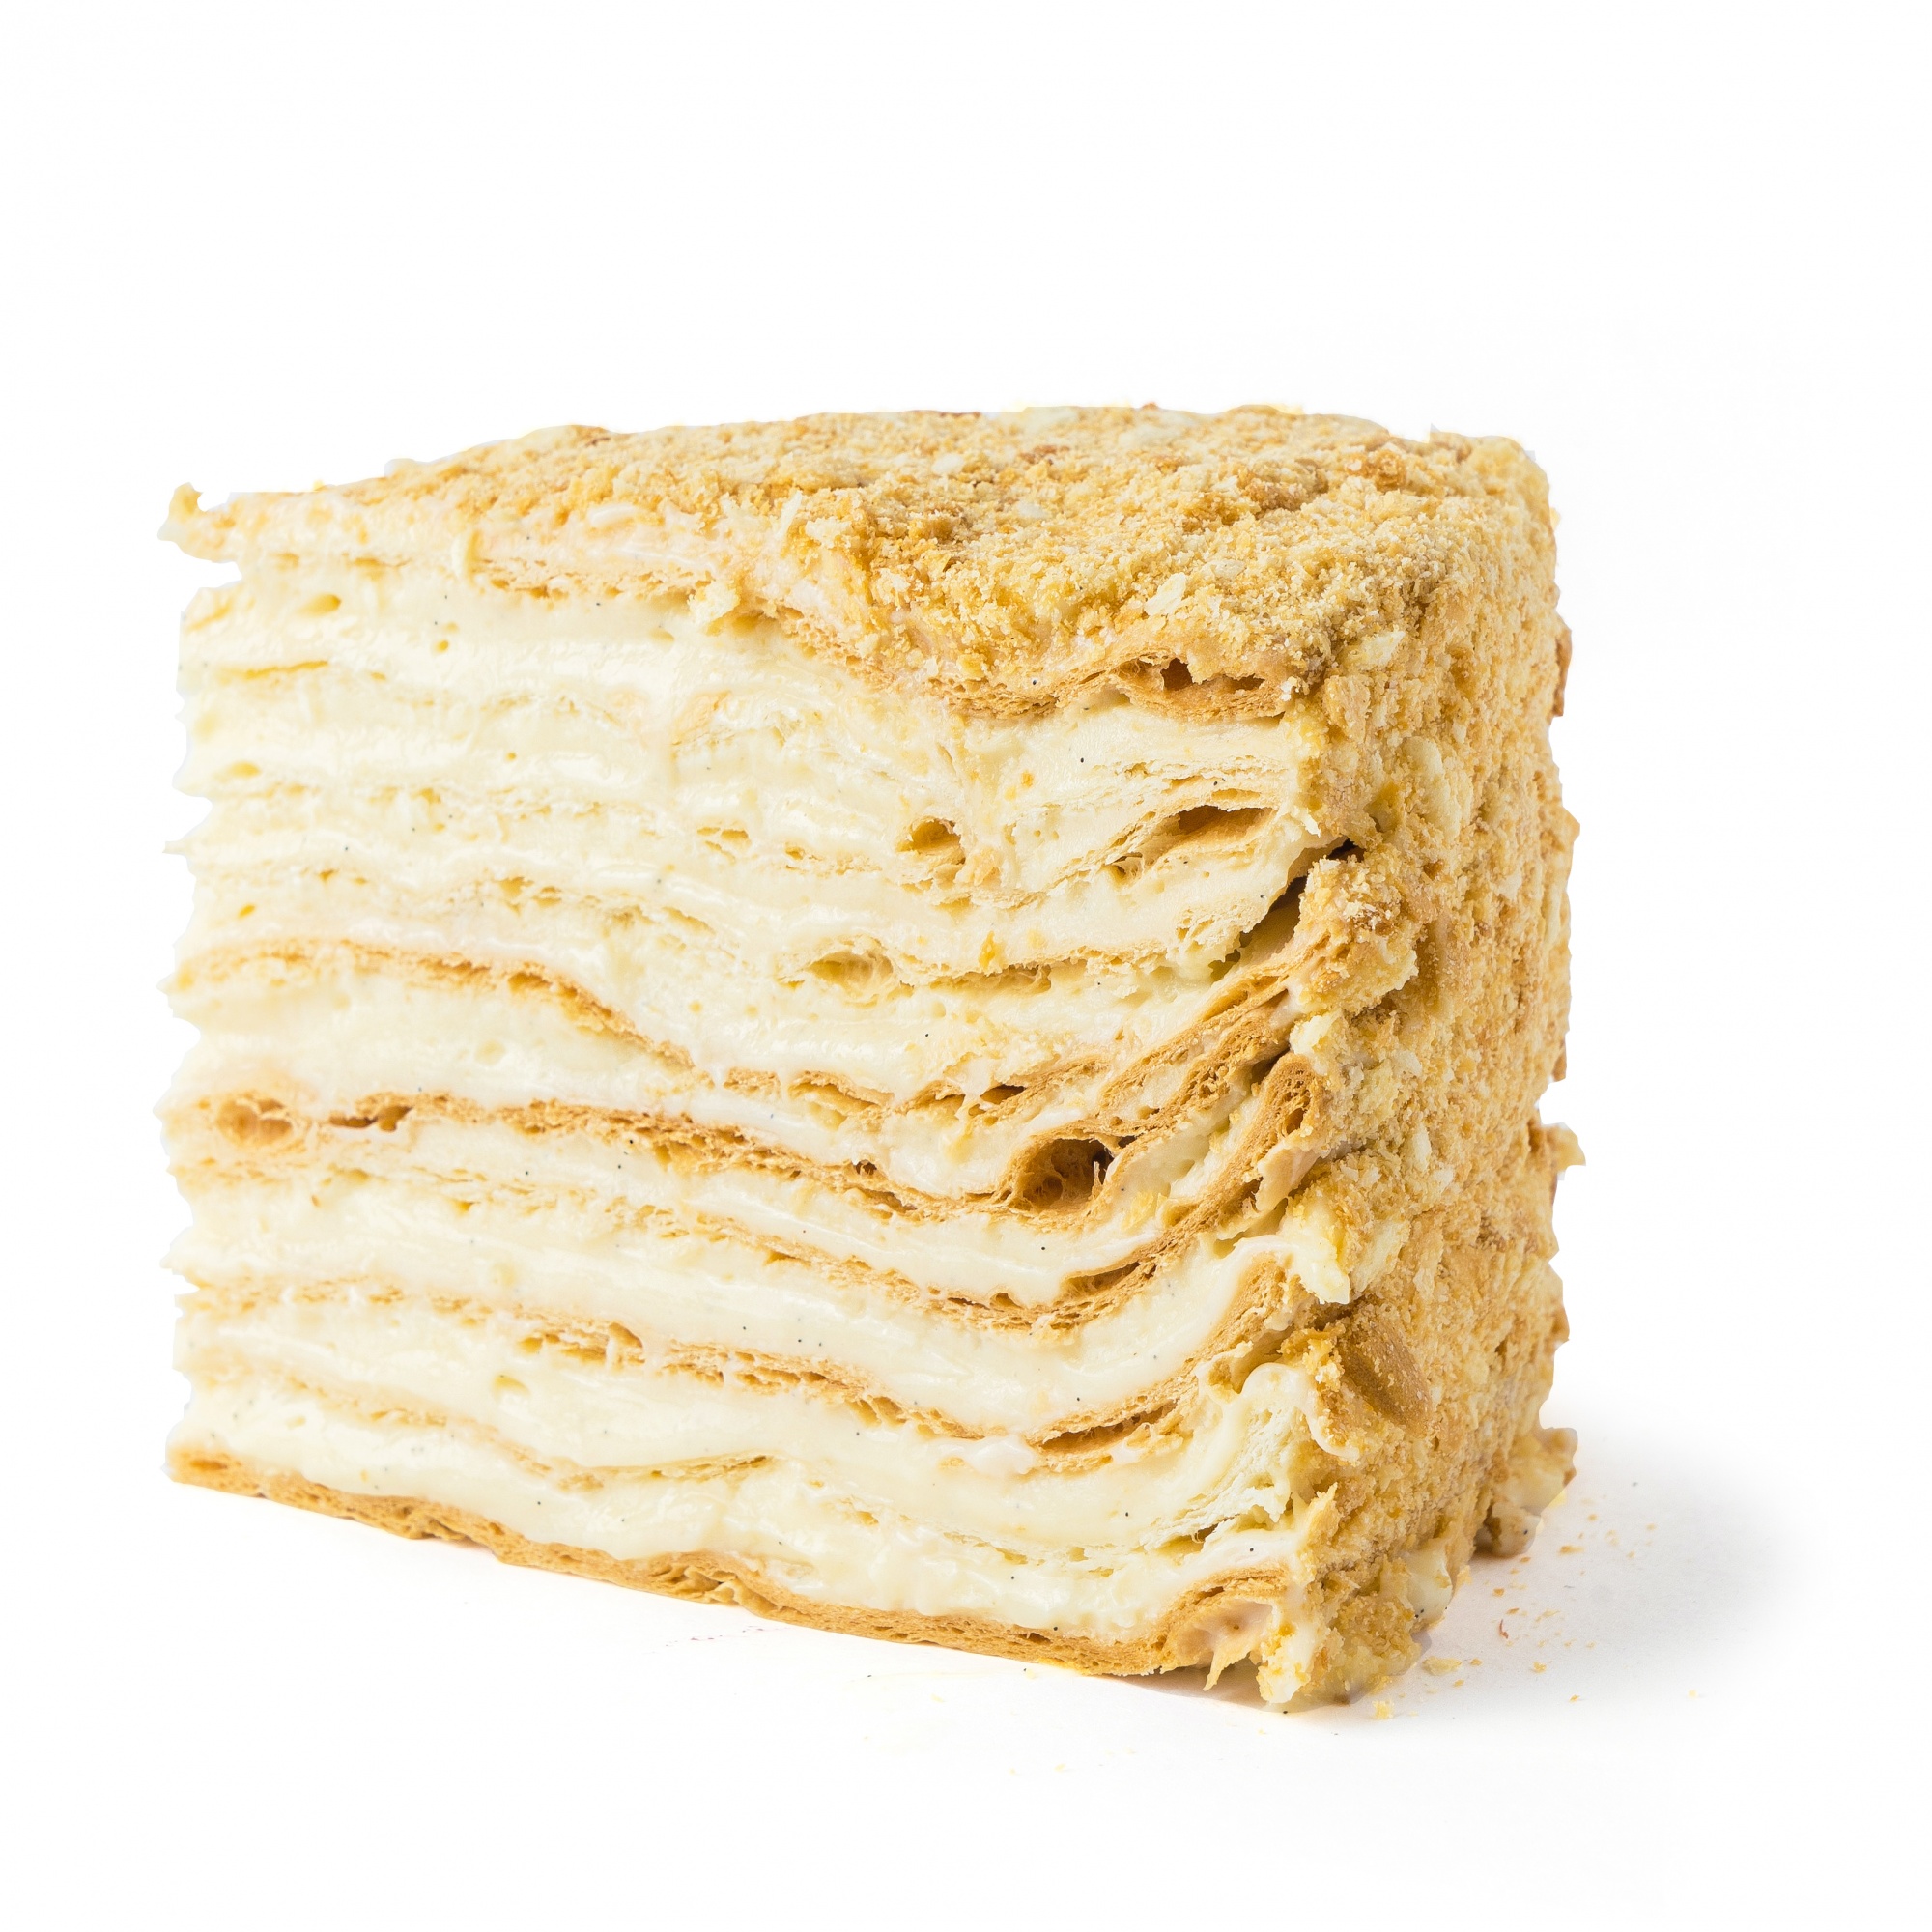 Электронный рецепт торта «Тот самый Наполеон» от Энди Шефа  | Фото — Магазин Andy Chef  1